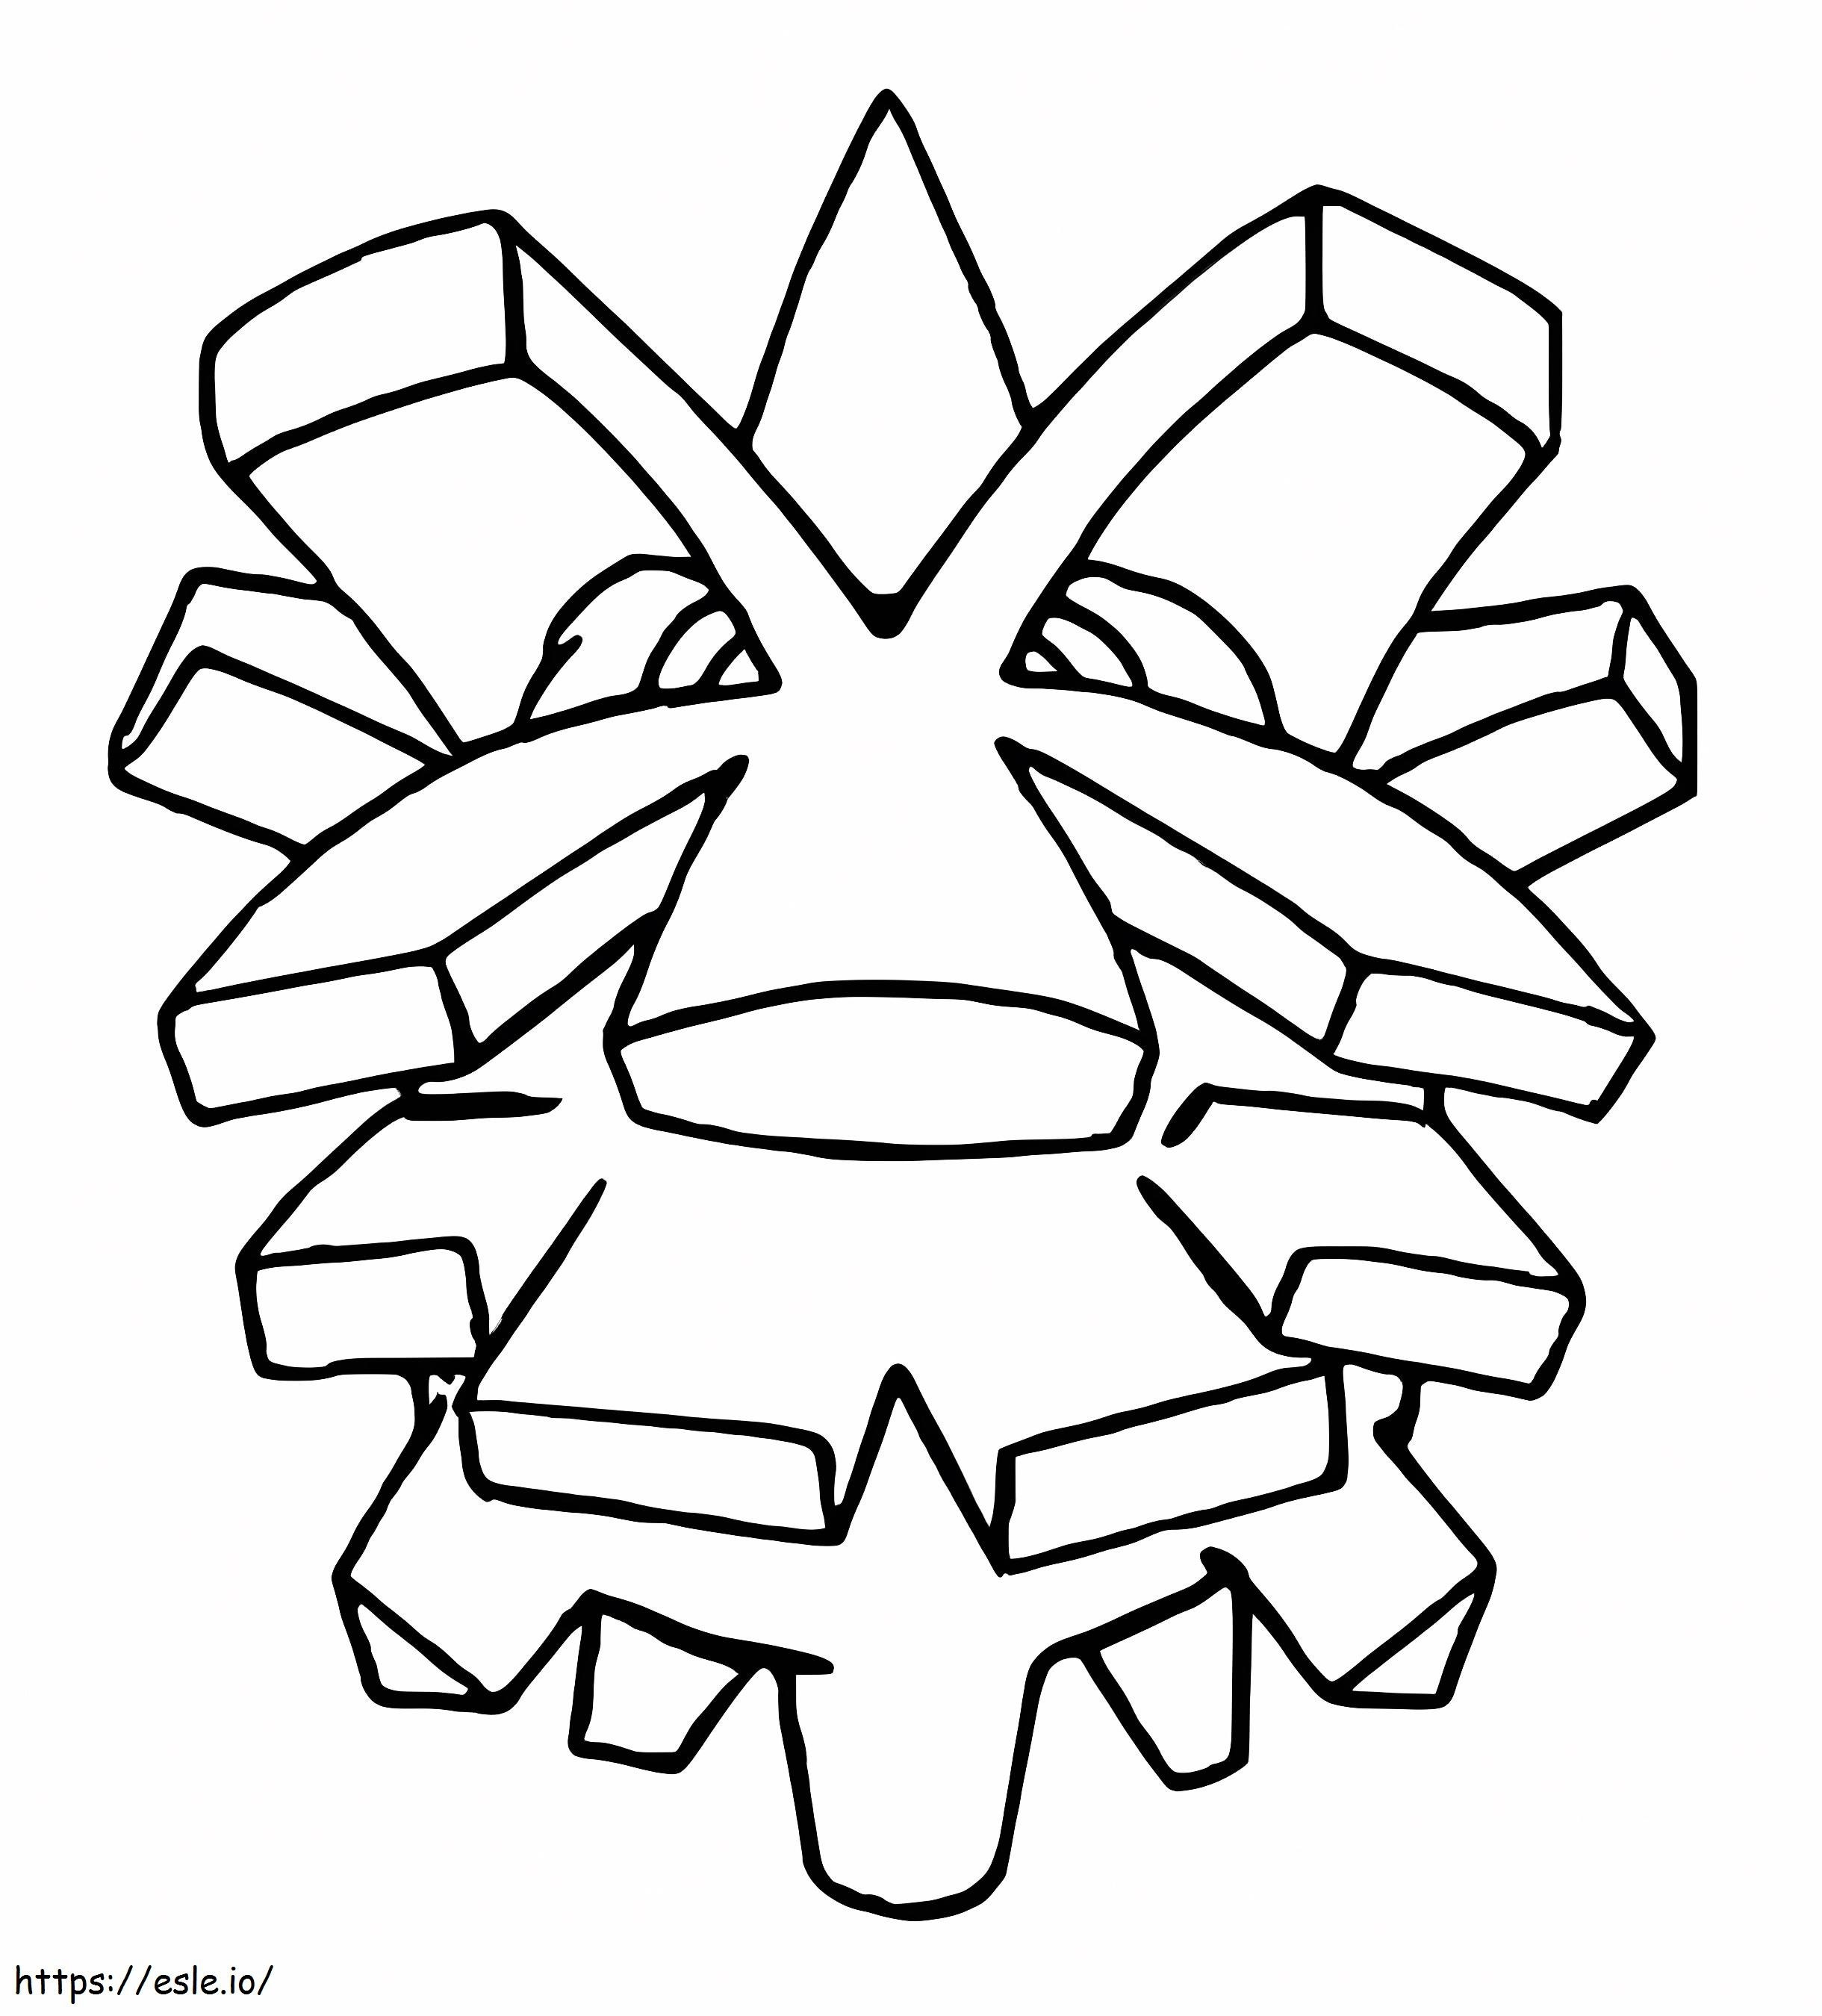 Coloriage Pokémon Pineco Gen 2 à imprimer dessin